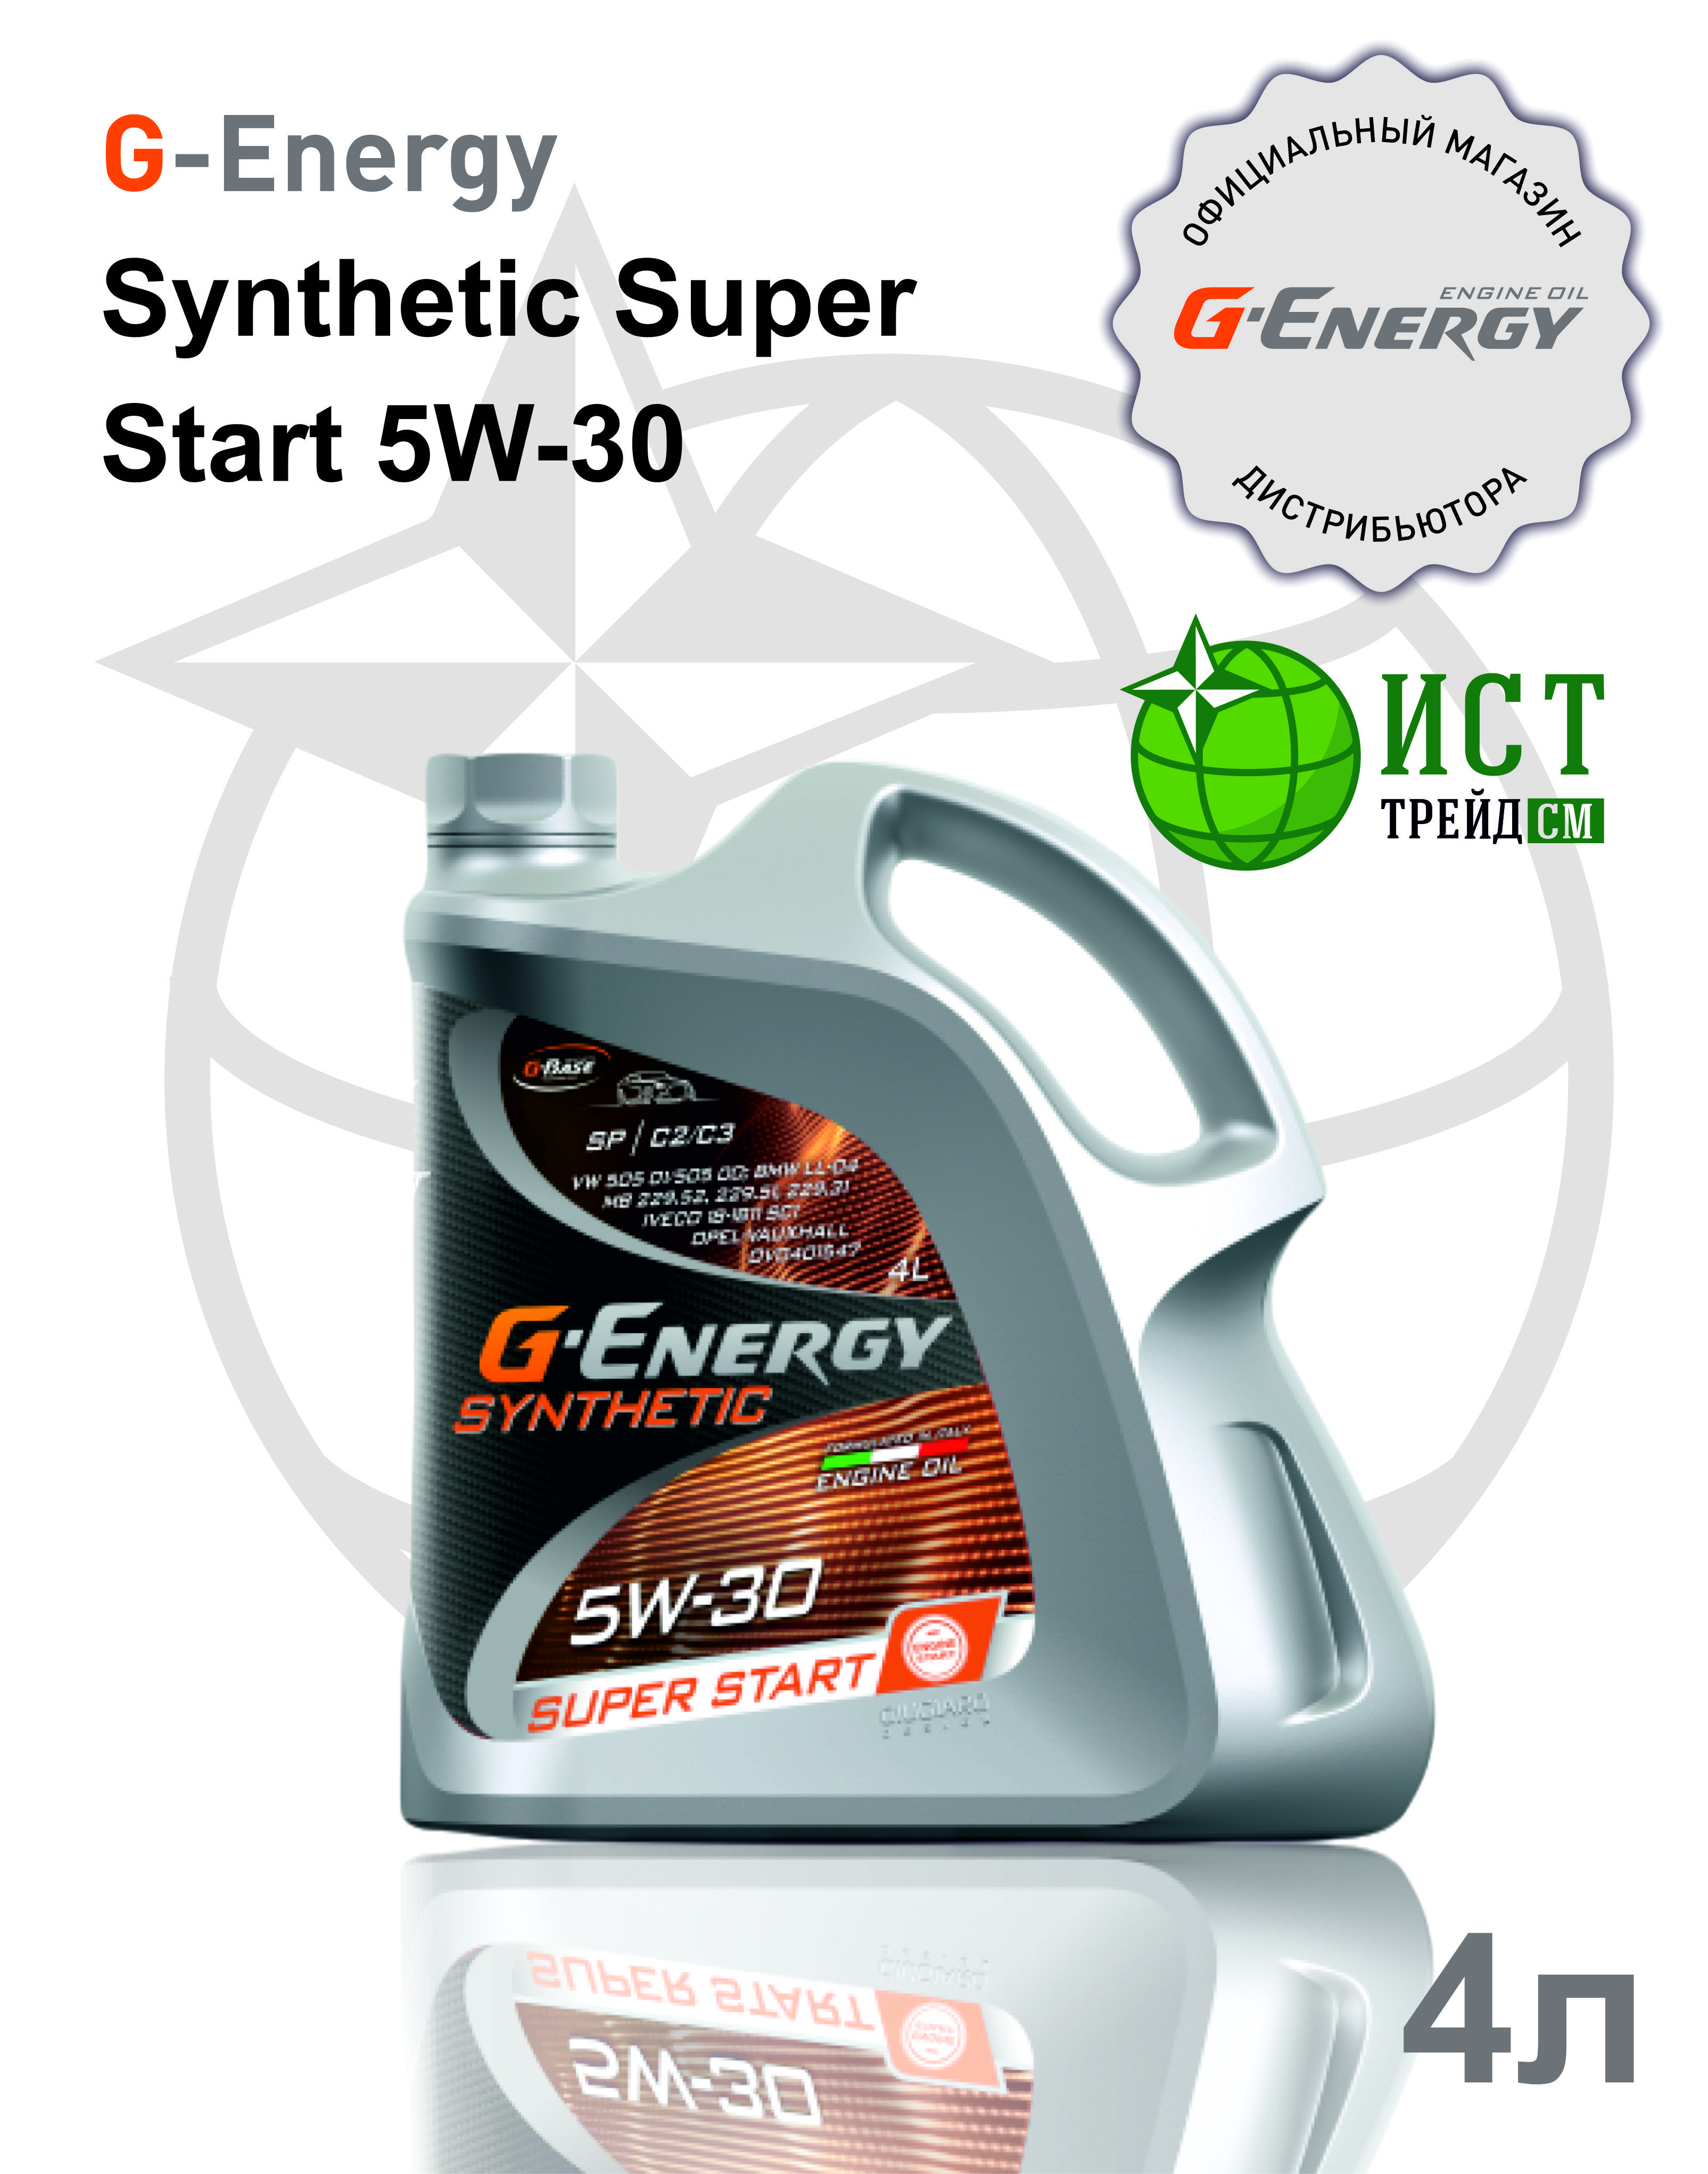 Super start 5w 30. G-Energy Synthetic super start 5w-30.